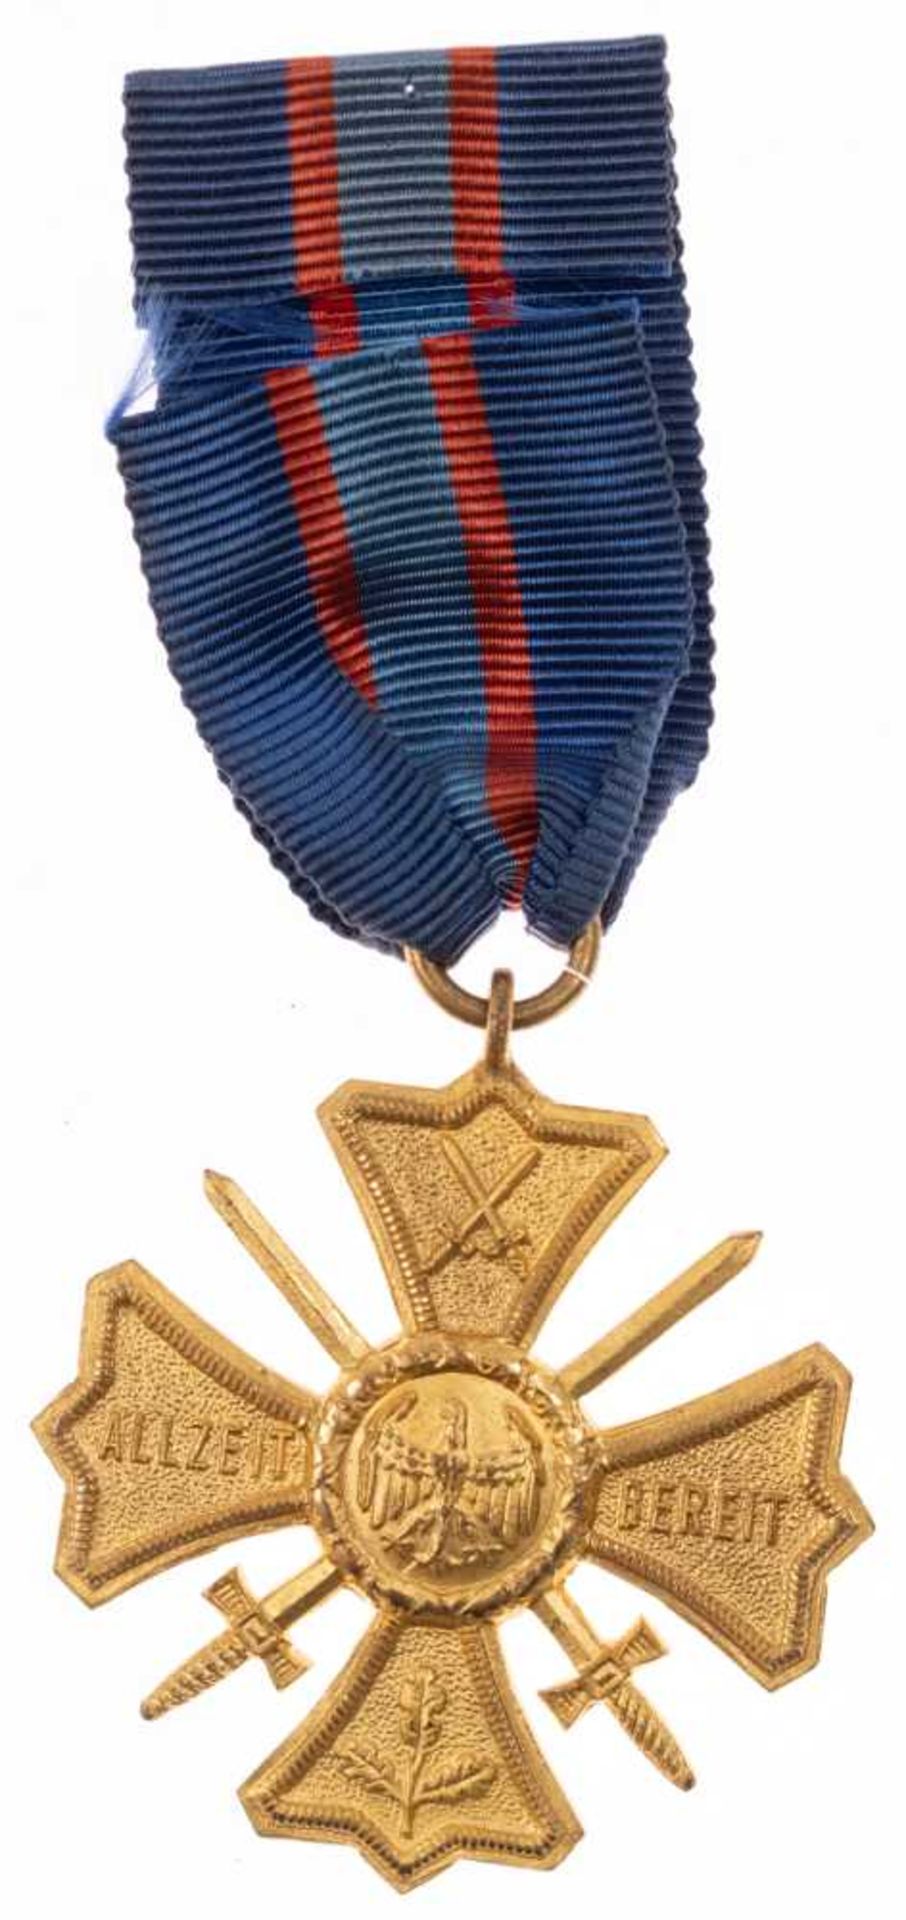 Erinnerungskreuz Treu dem Regiment, am Bandabschnitt, nach Bandfarbe gehörte der Träger zu einem der